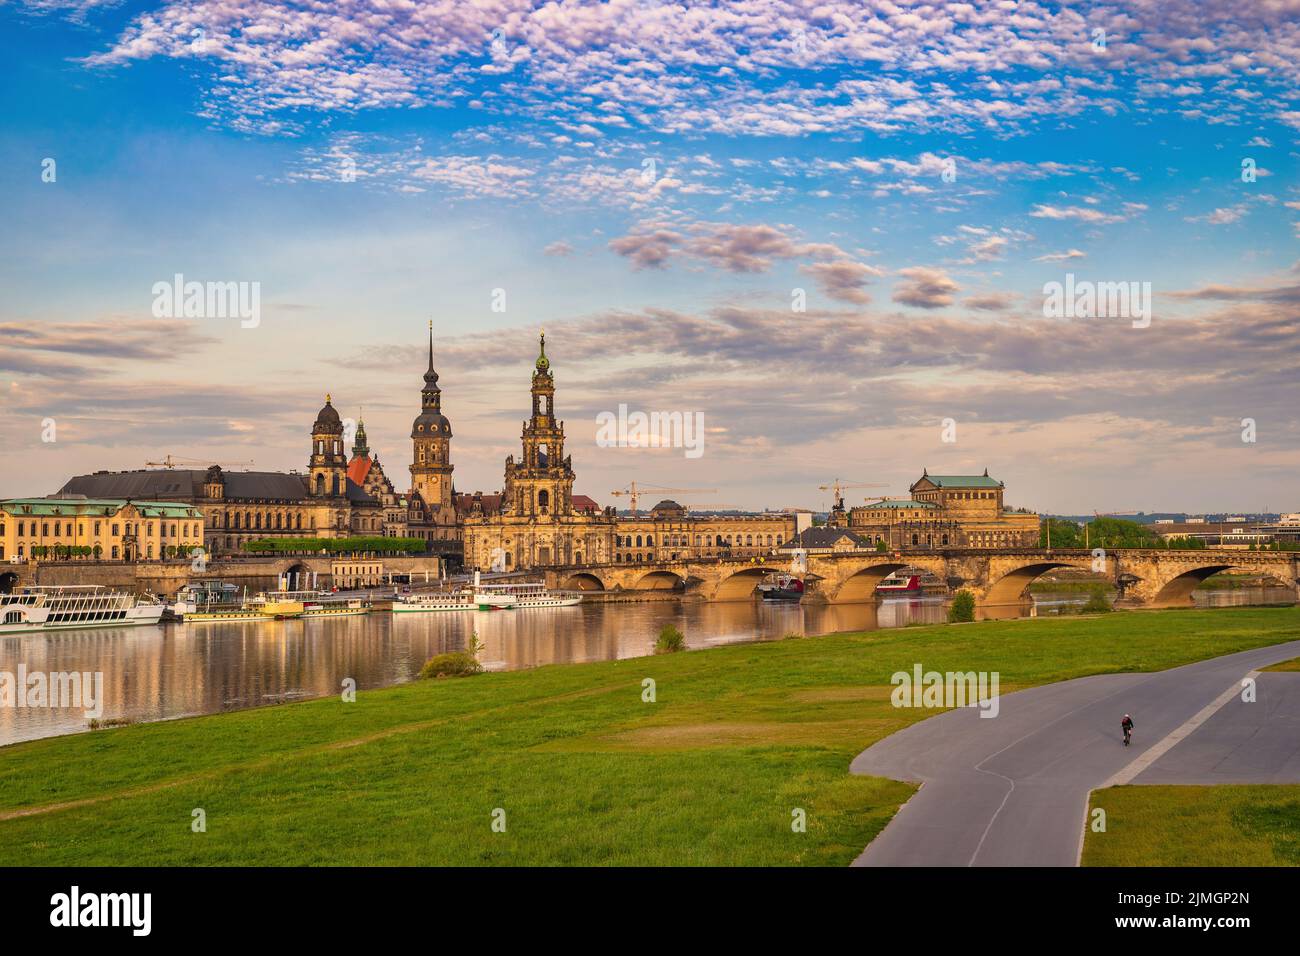 Dresda Germania, skyline della città sul fiume Elba e sul ponte Augustus Foto Stock